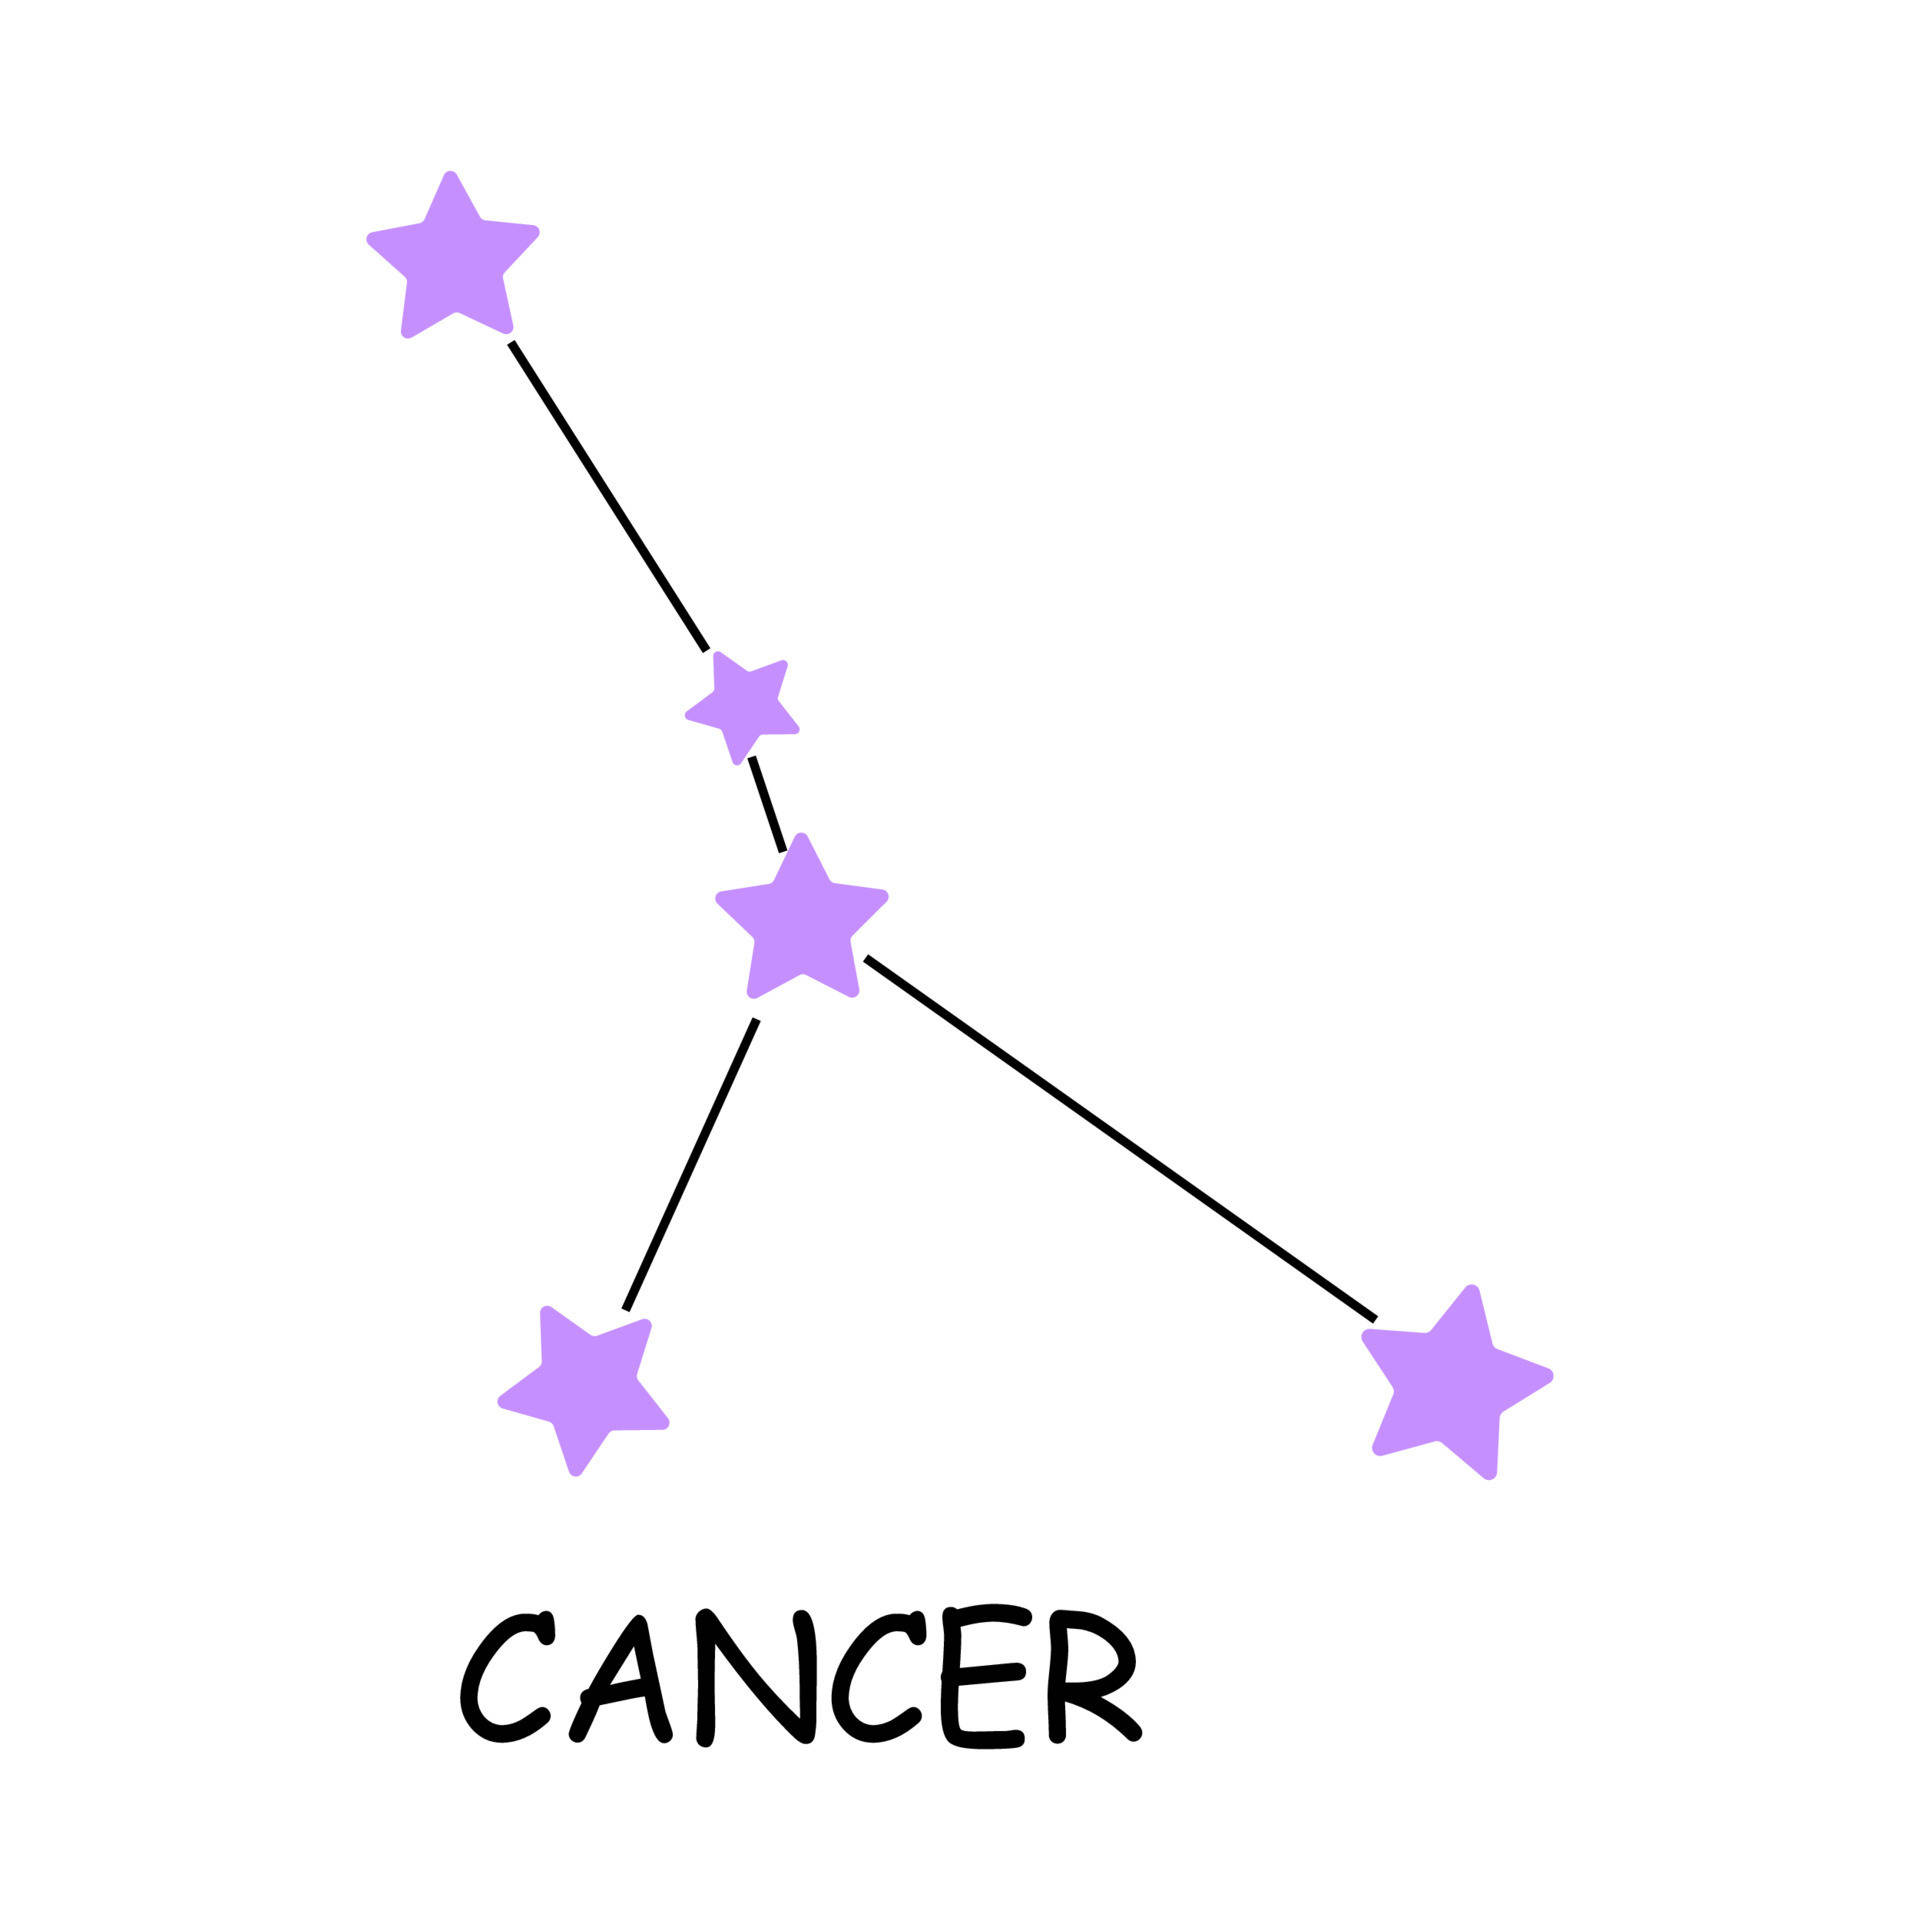 Kämpfenmit Hoffnung - Eine Krebsästhetische Darstellung Wallpaper